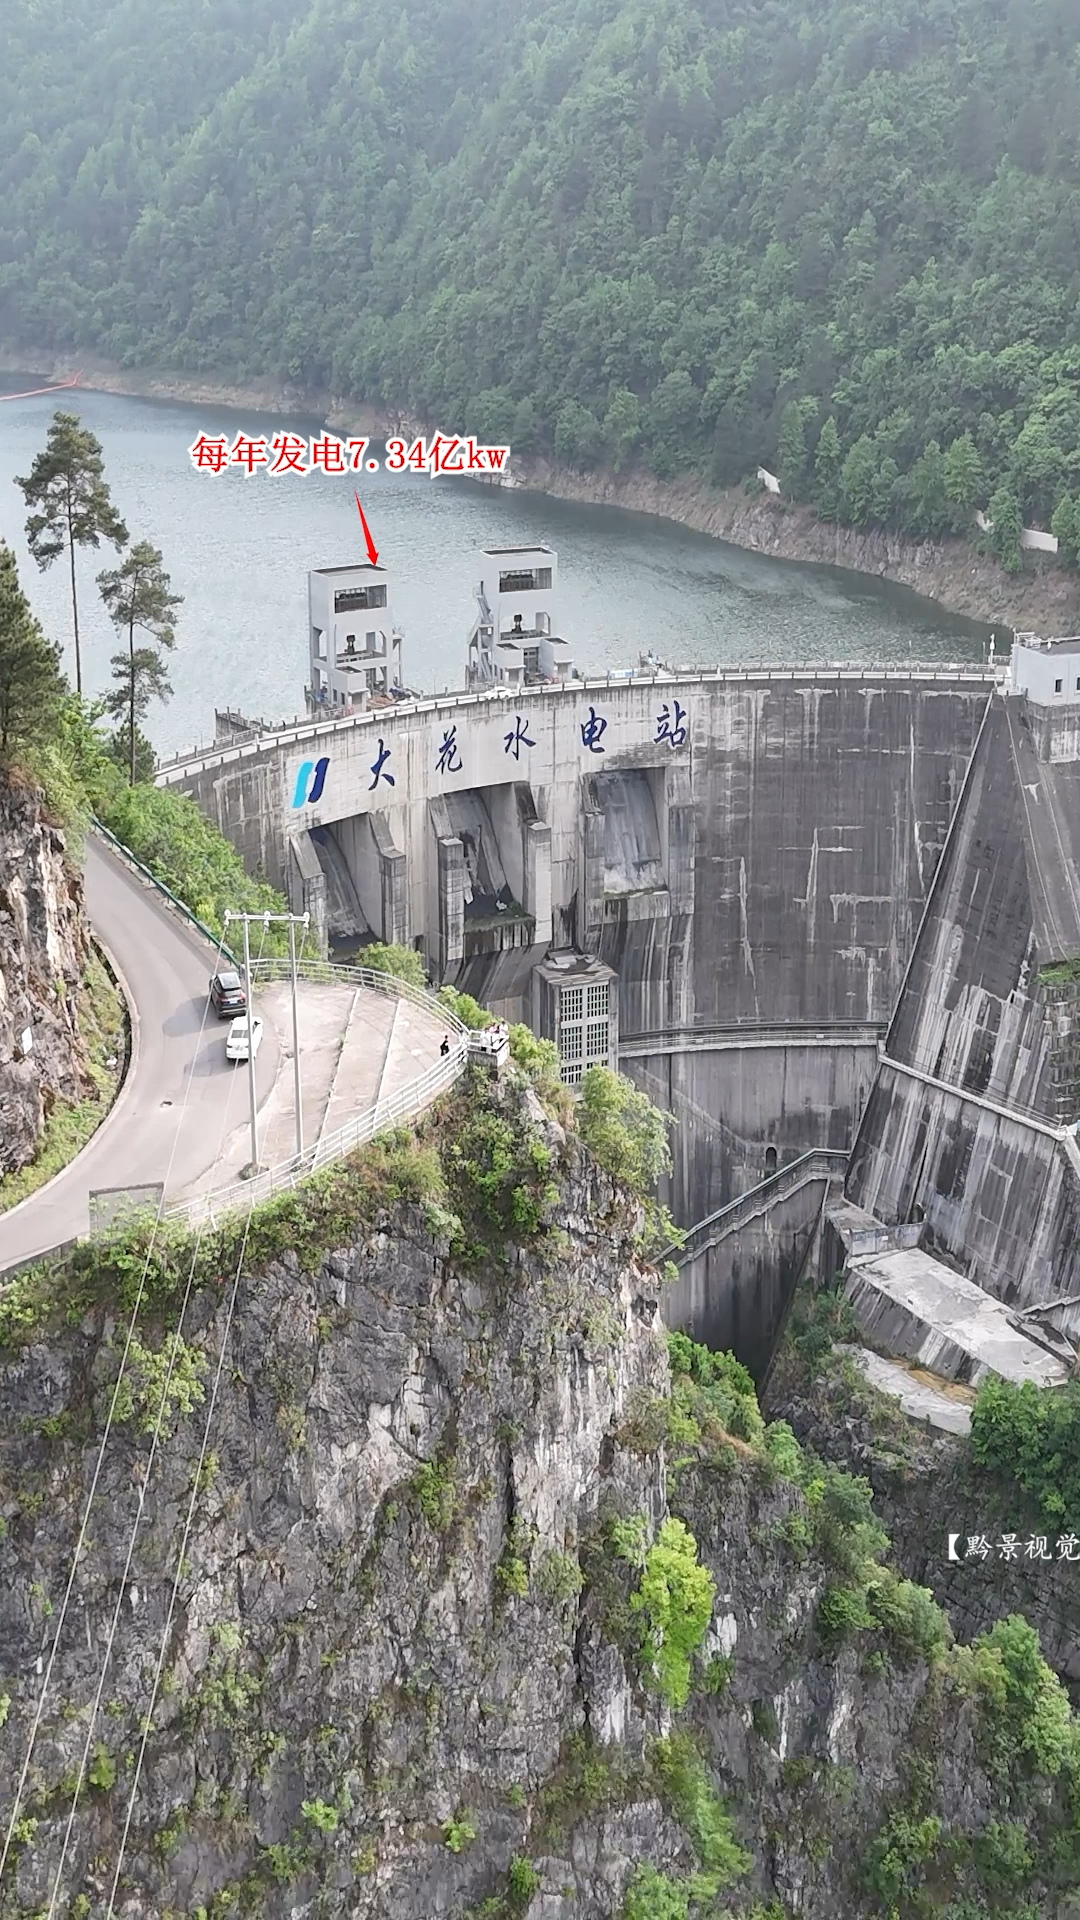 眼前这座水电站位于贵州福泉与开阳县的交界处，高134.5米，每年发电7.34亿千瓦！#大花水电站 #